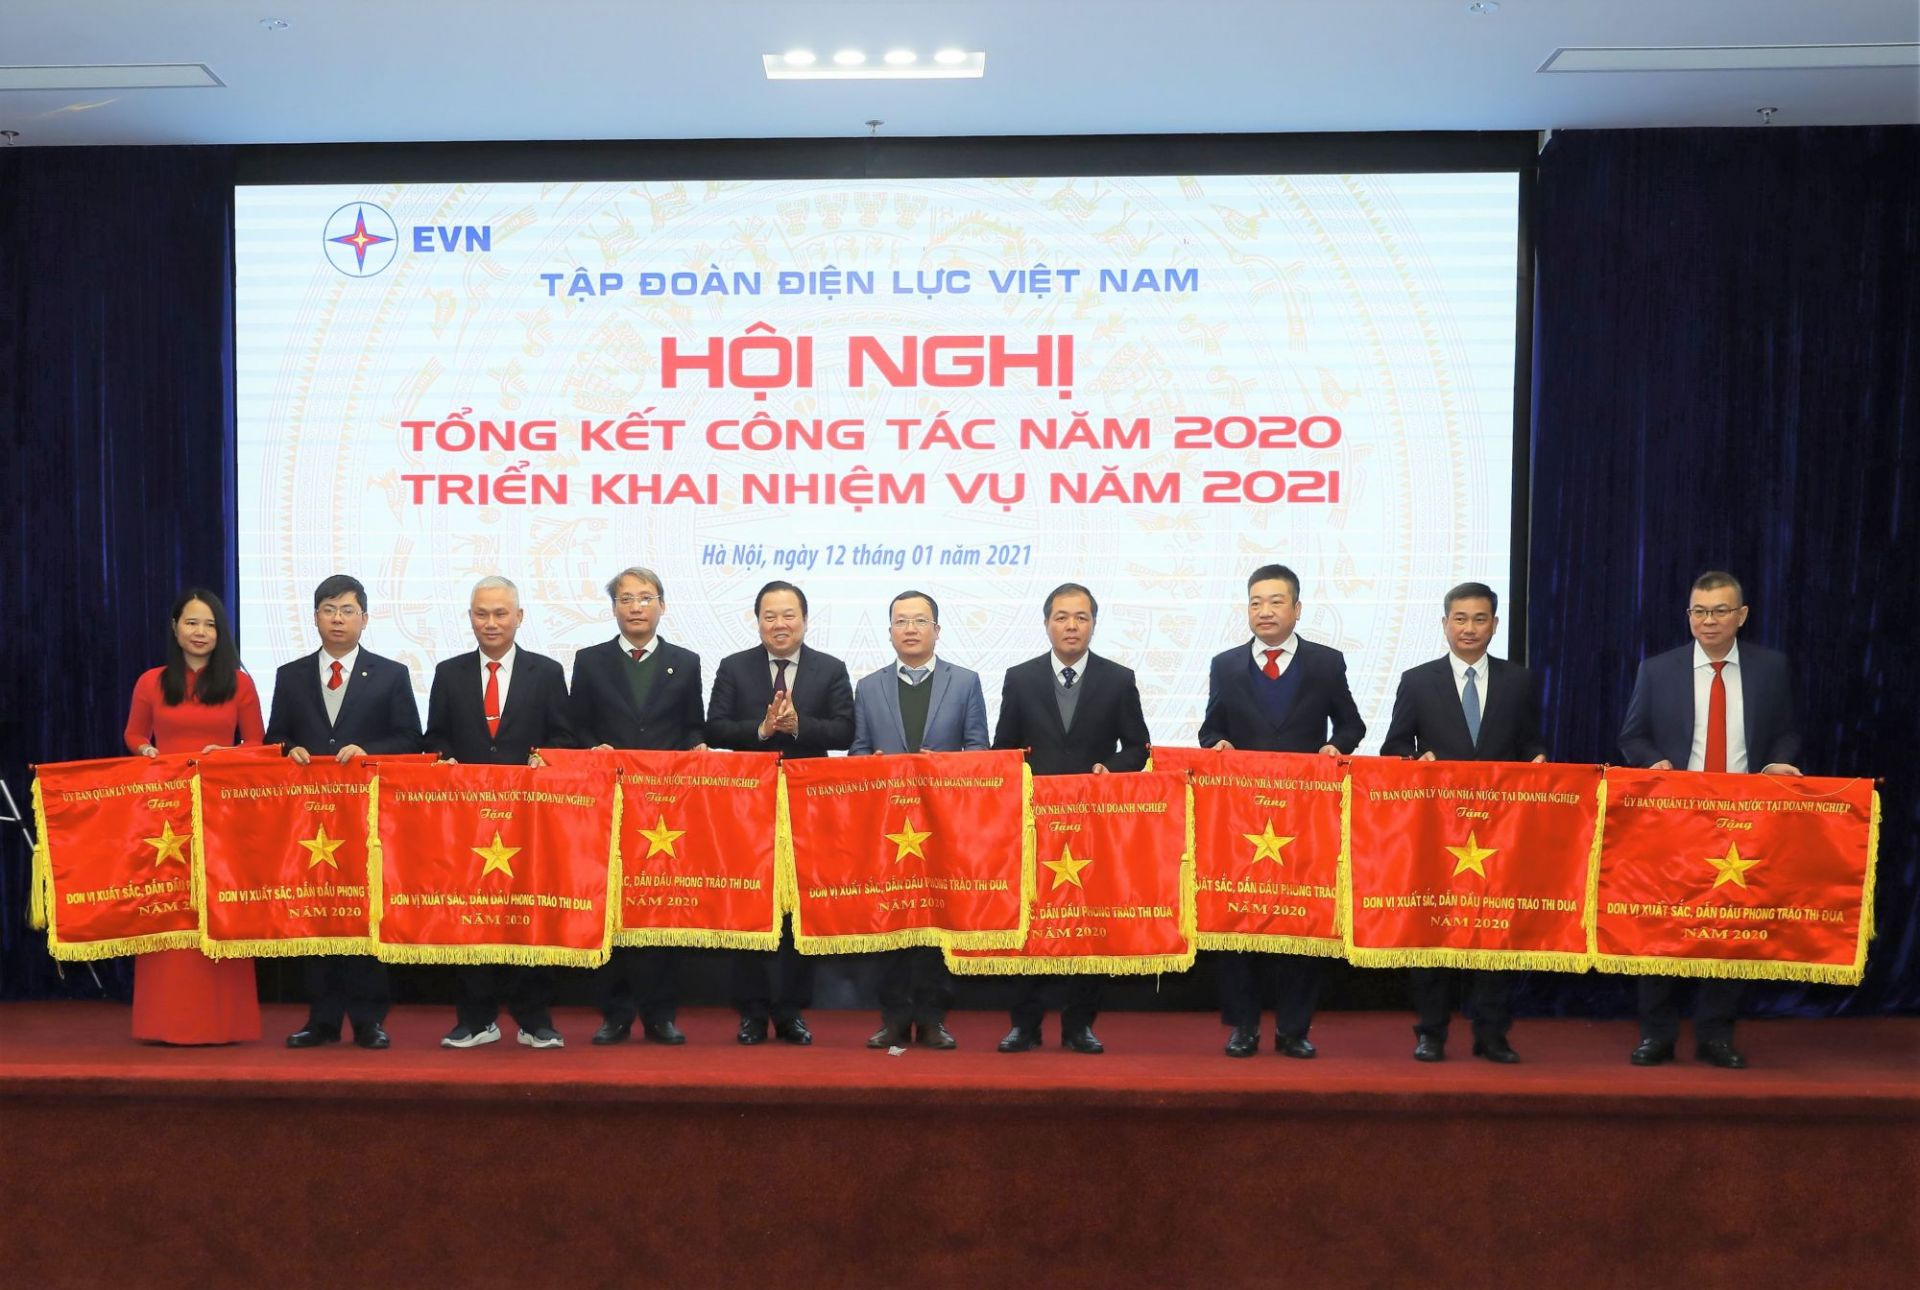 Tổng Giám đốc Nguyễn Văn Thanh đại diện EVNHCMC nhận Cờ thi đua xuất sắc năm 2020 do Ủy ban Quản lý vốn nhà nước tại doanh nghiệp trao tặng